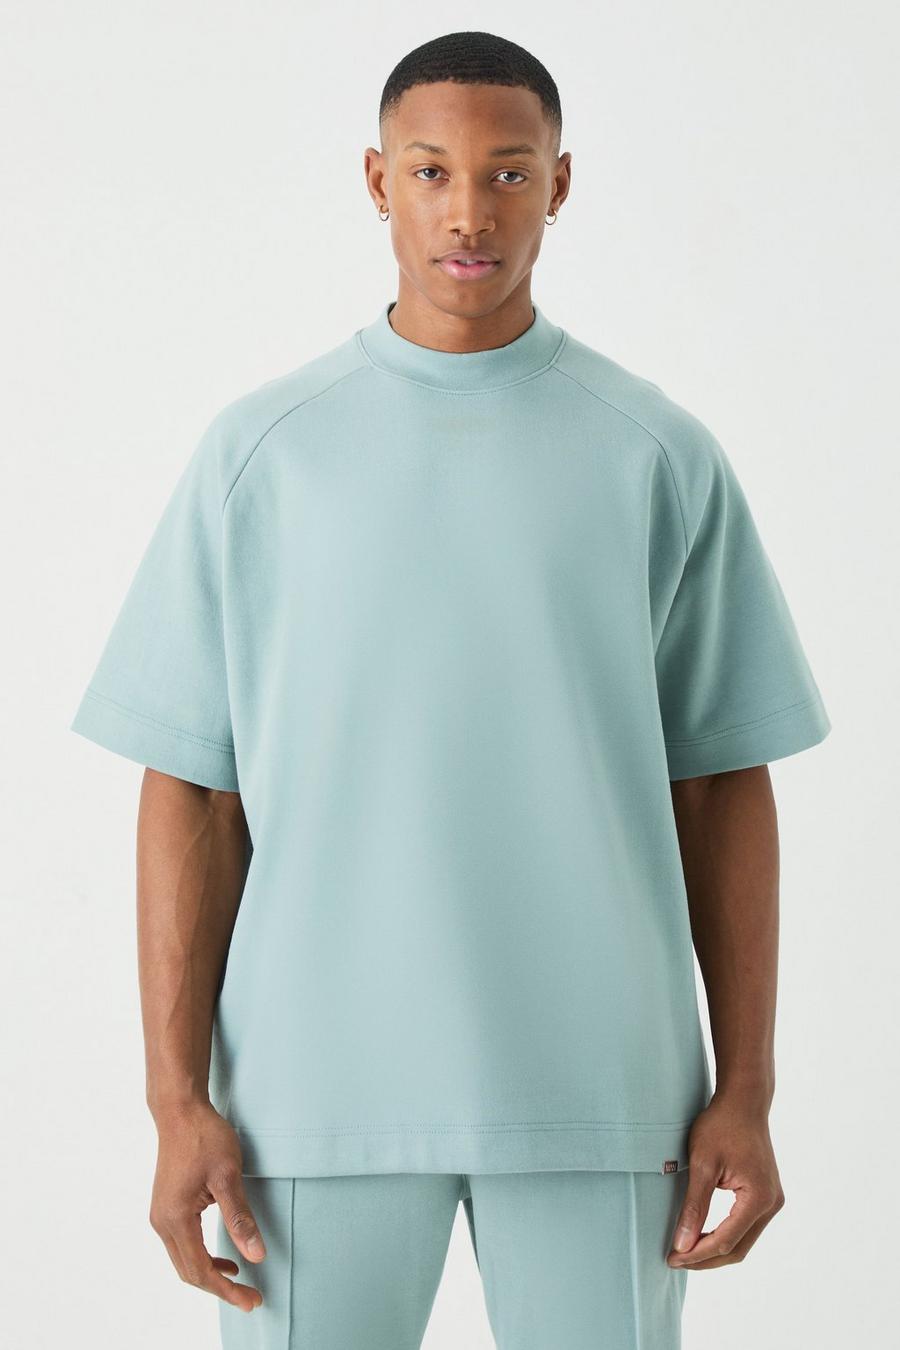 Camiseta MAN oversize de raglán grueso entrelazado con cuello extendido, Dusty blue